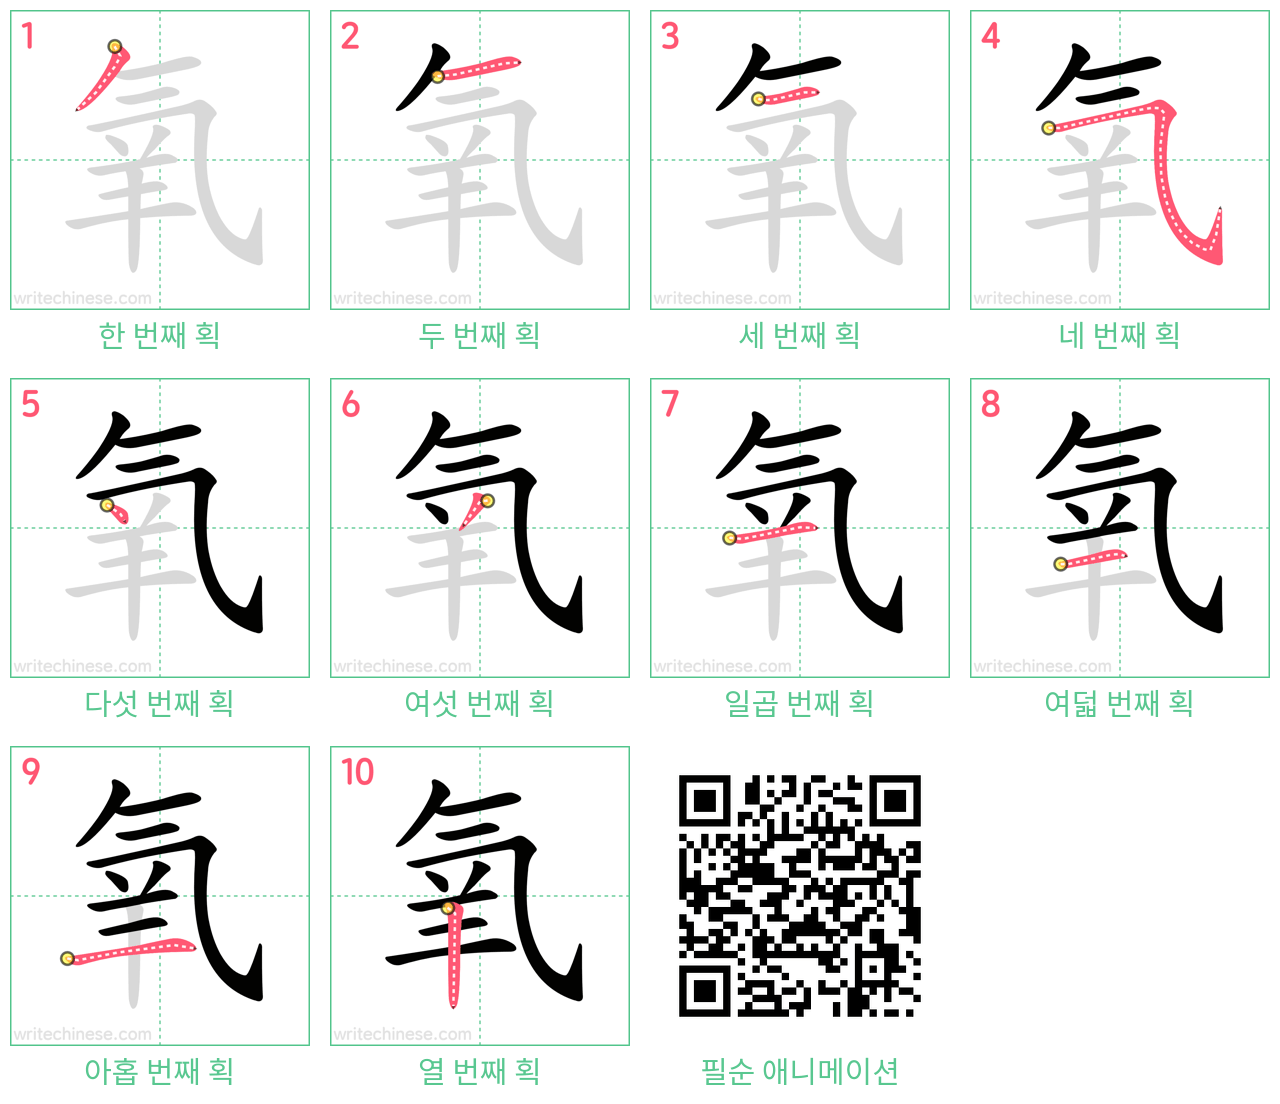 氧 step-by-step stroke order diagrams